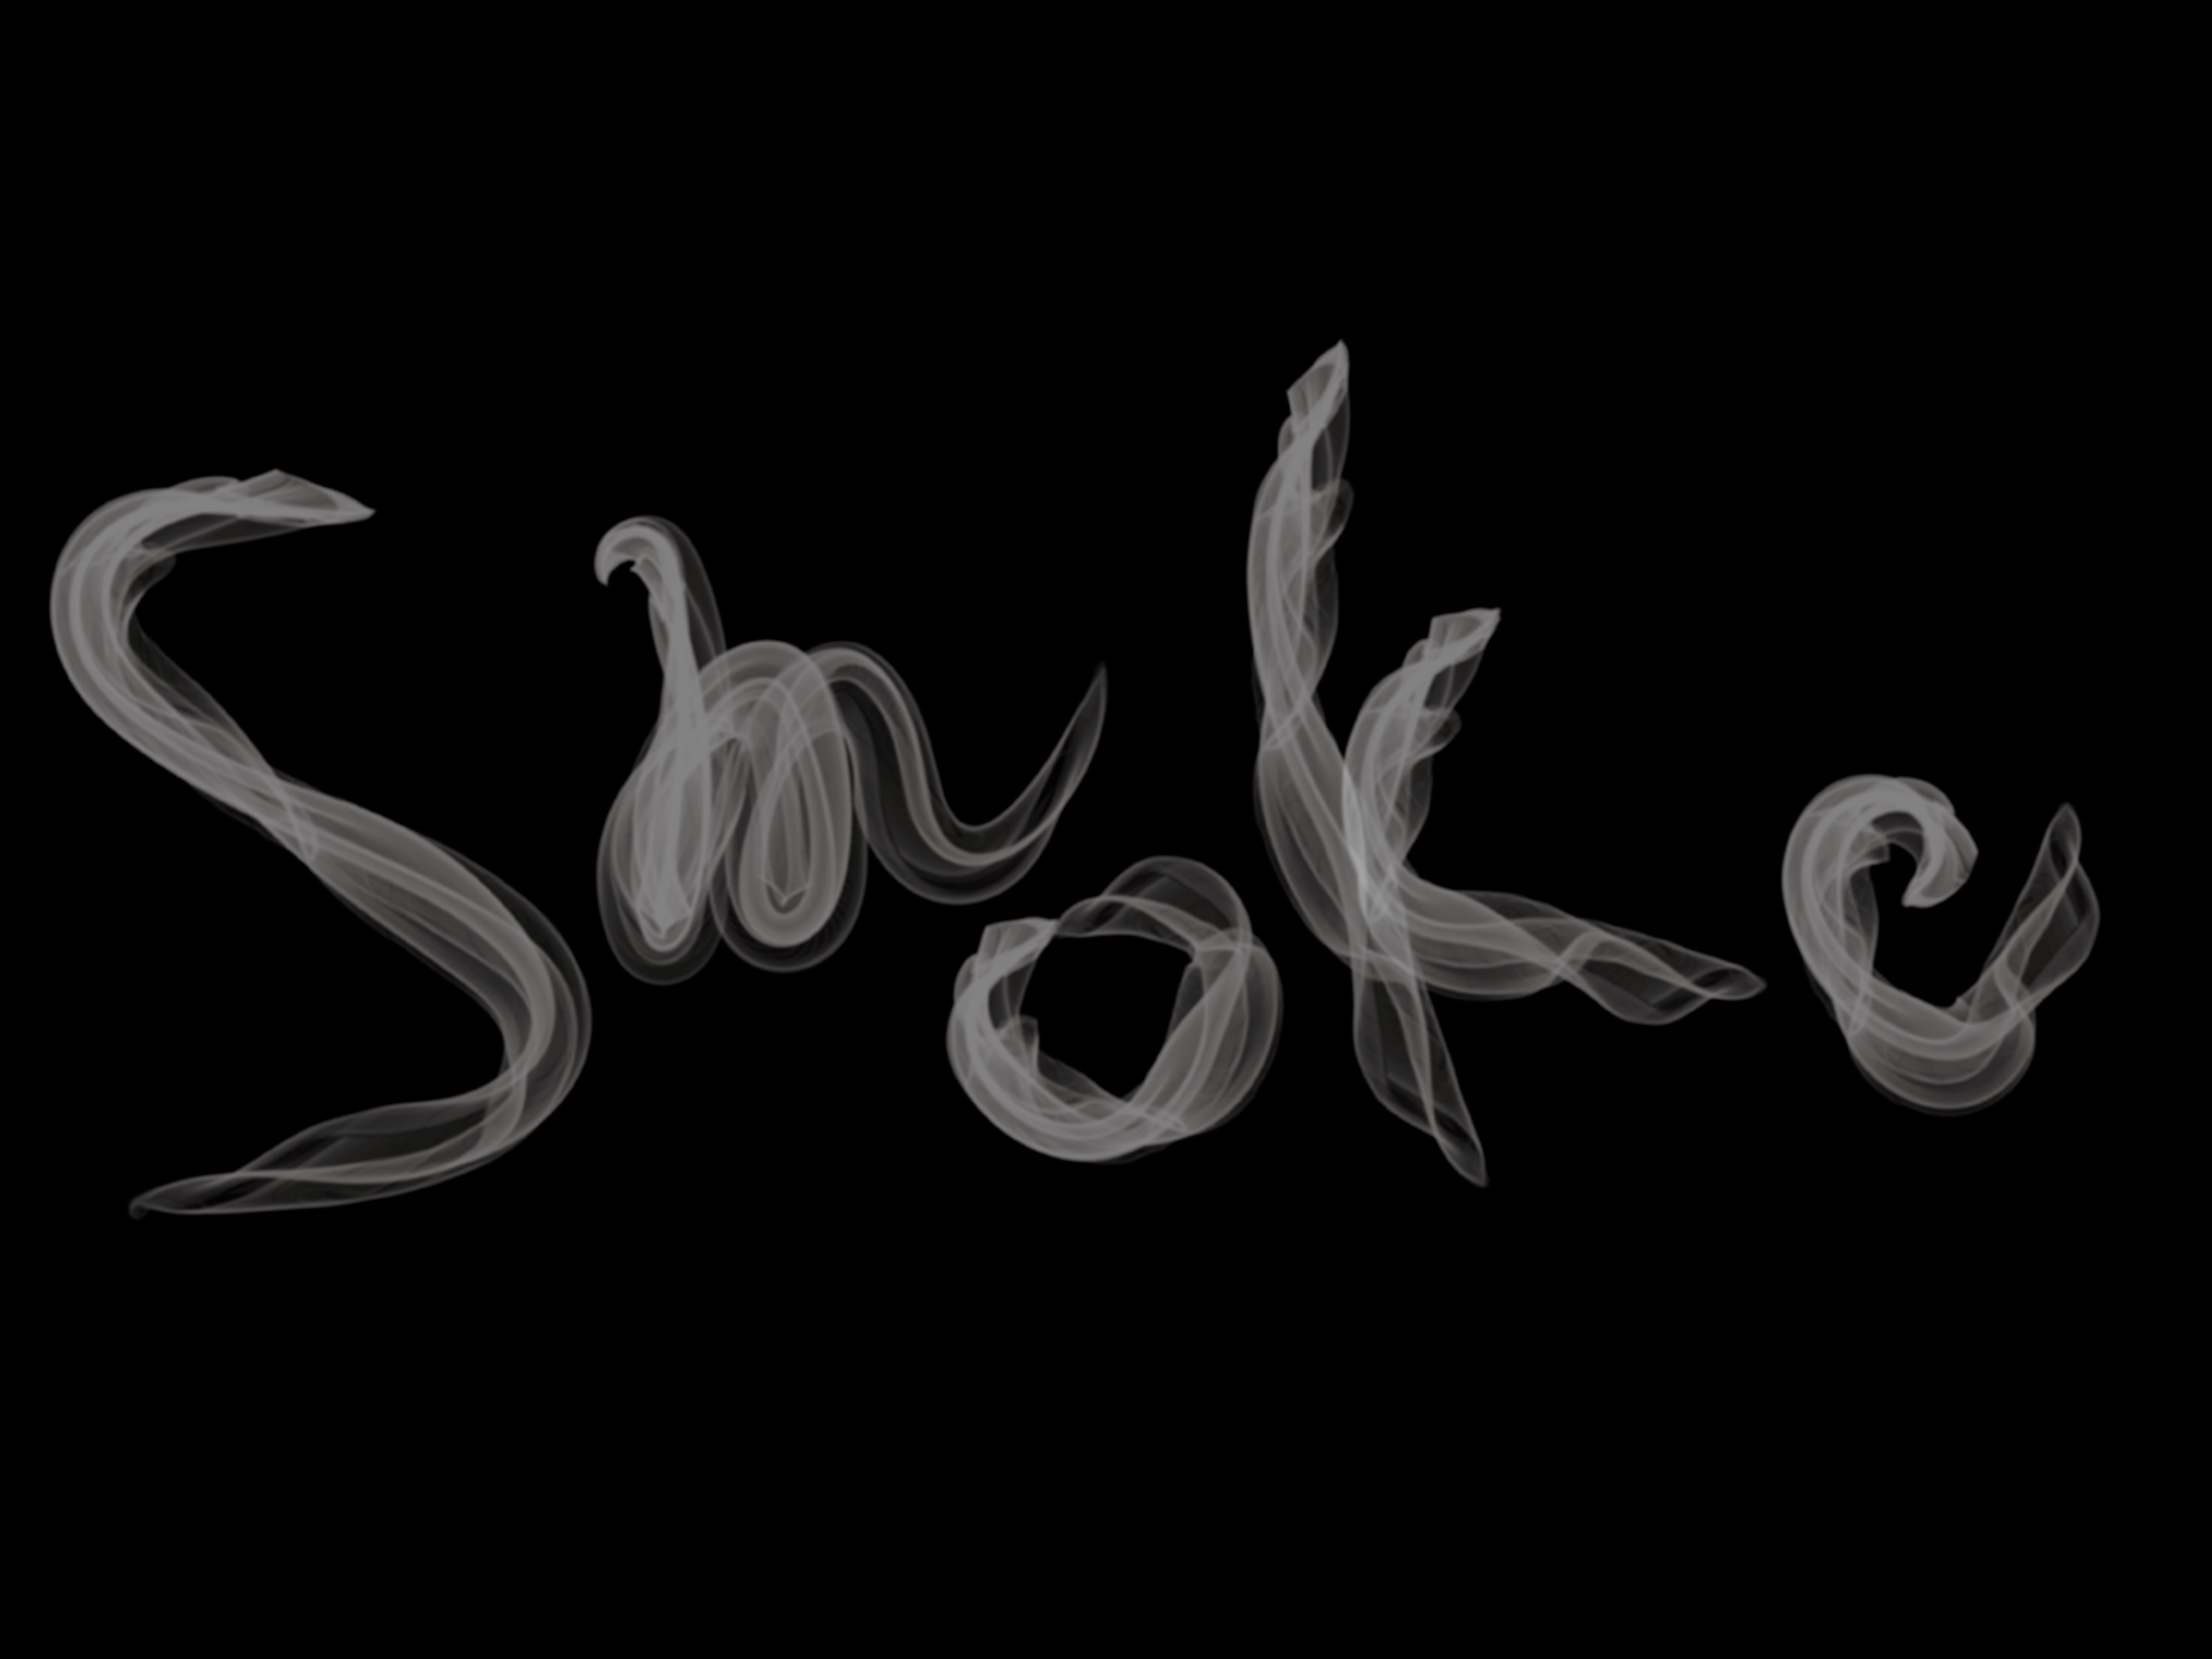 Illustratorで煙のようなアートブラシを作ってみた Wand わんど